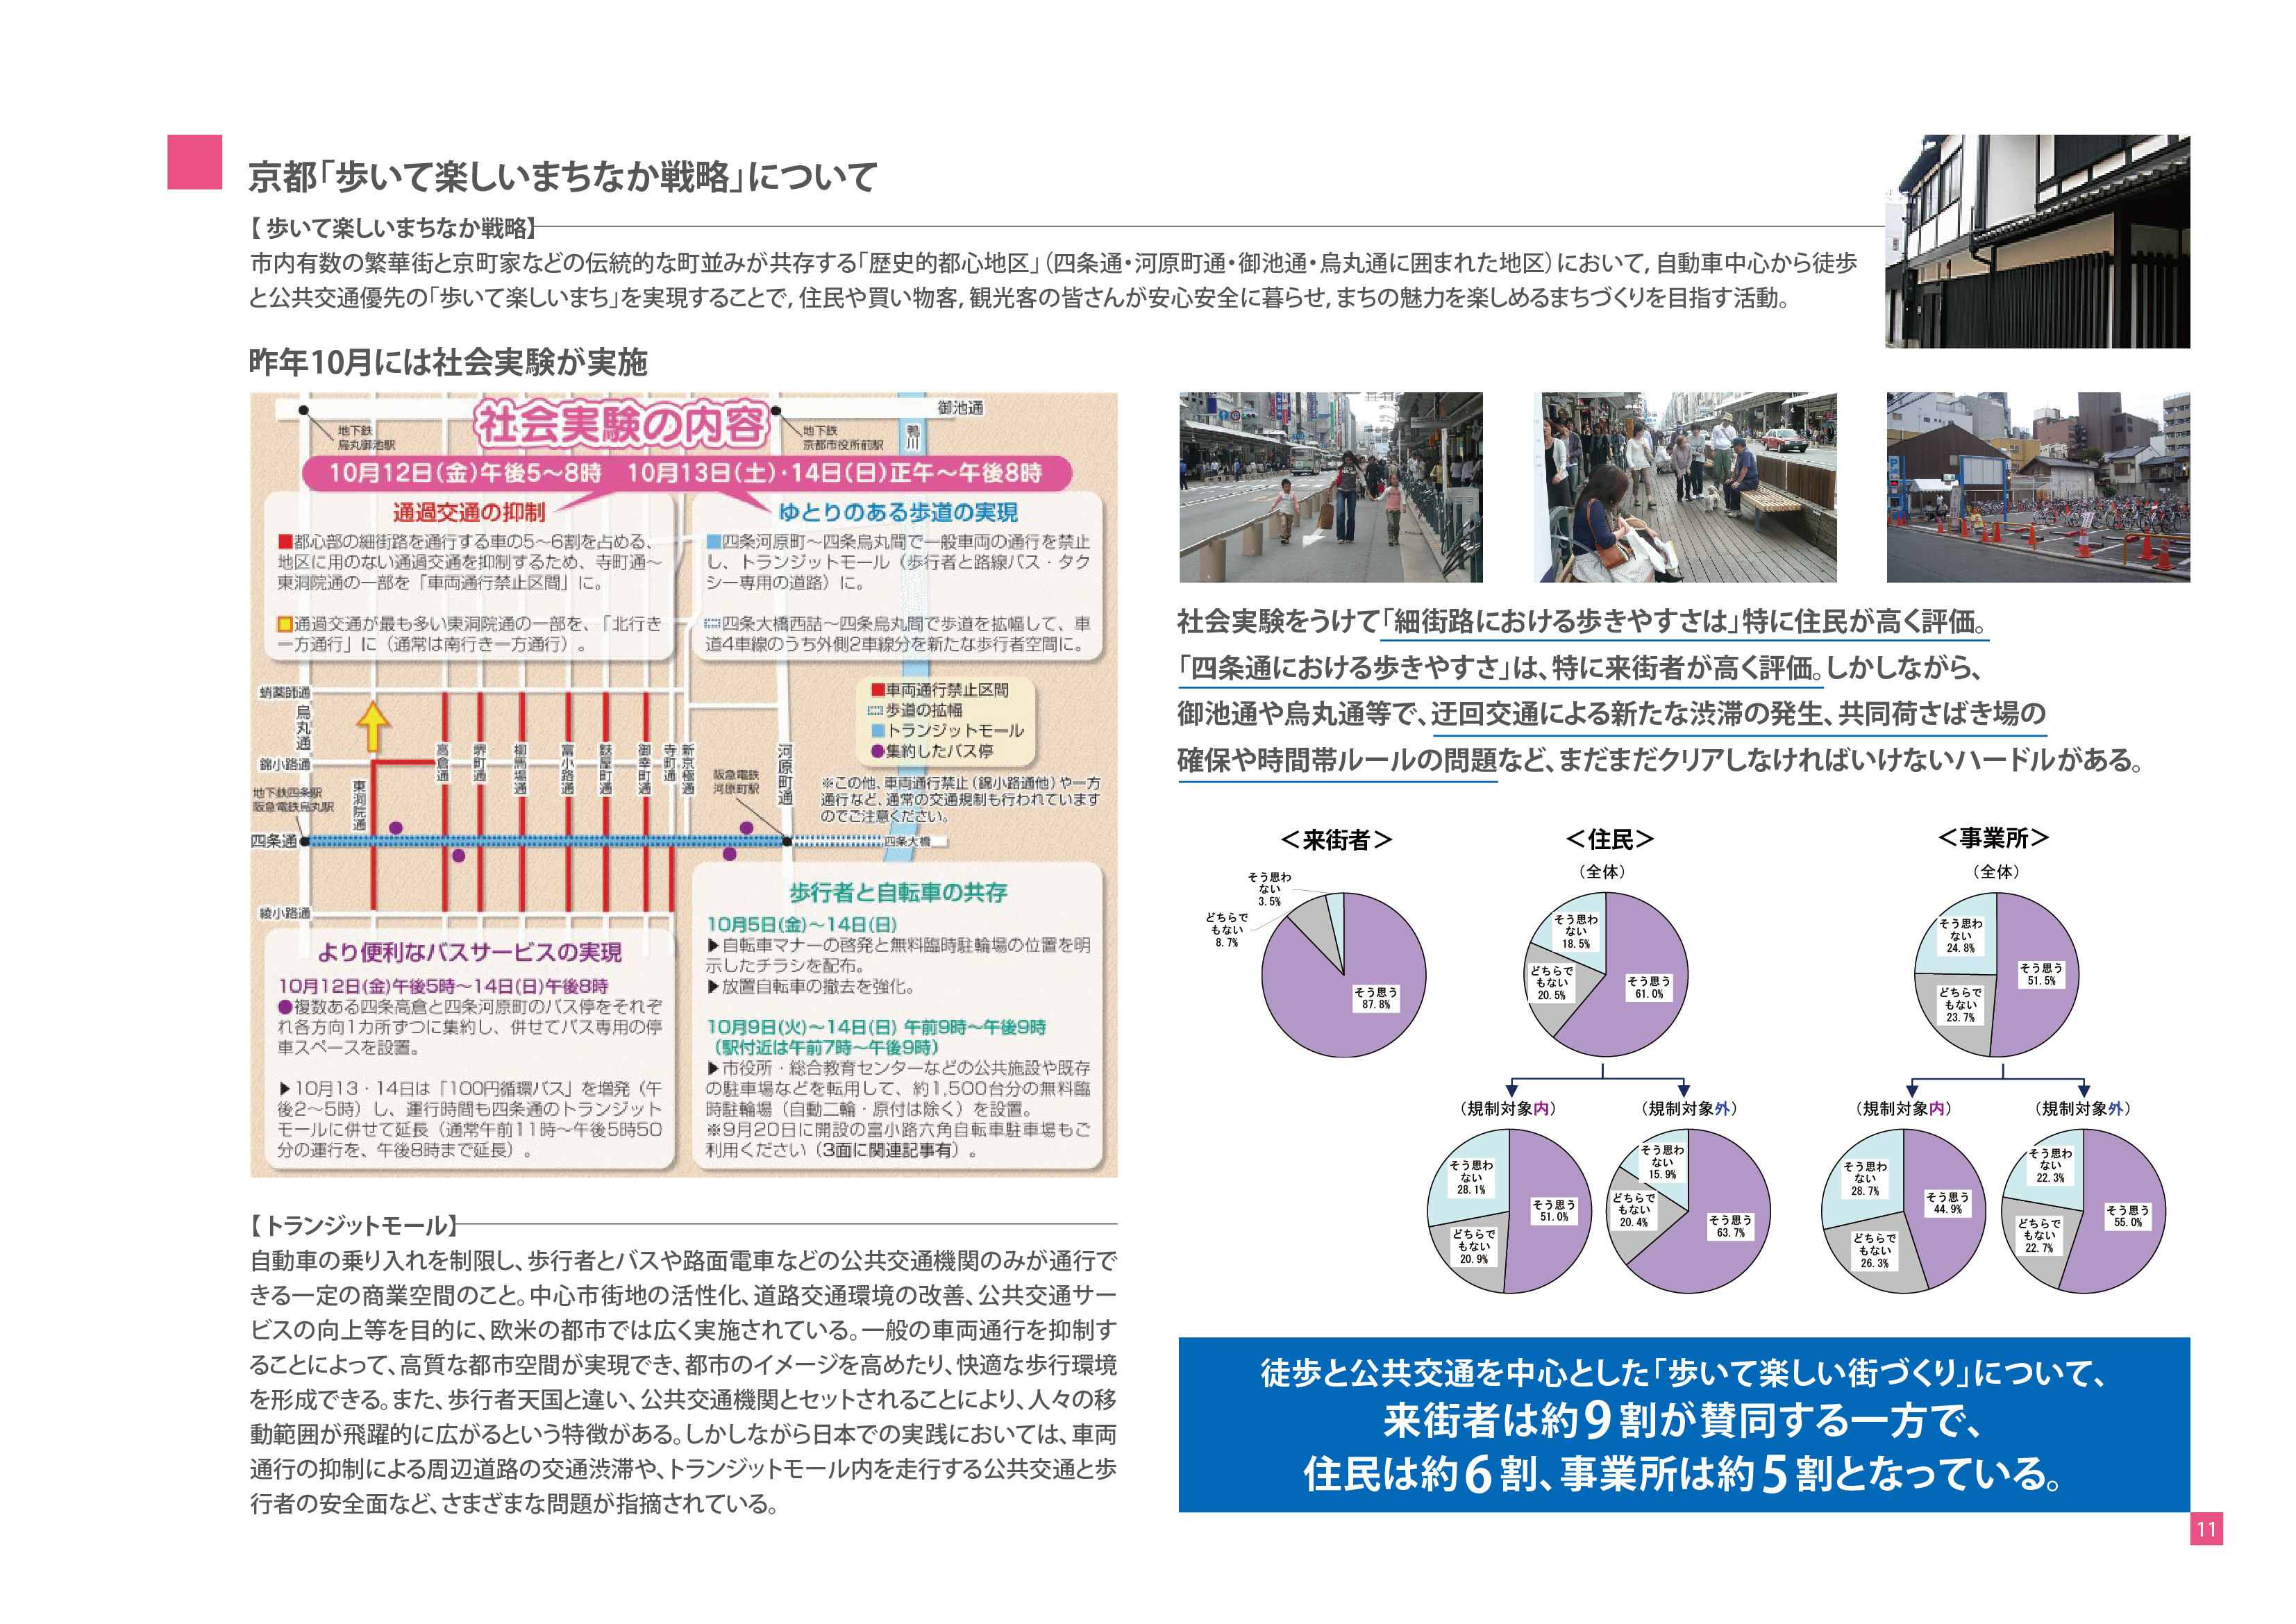 土地有効活用プロジェクト-駐車場経営のご提案-京都「歩いて楽しいまちなか戦略」について